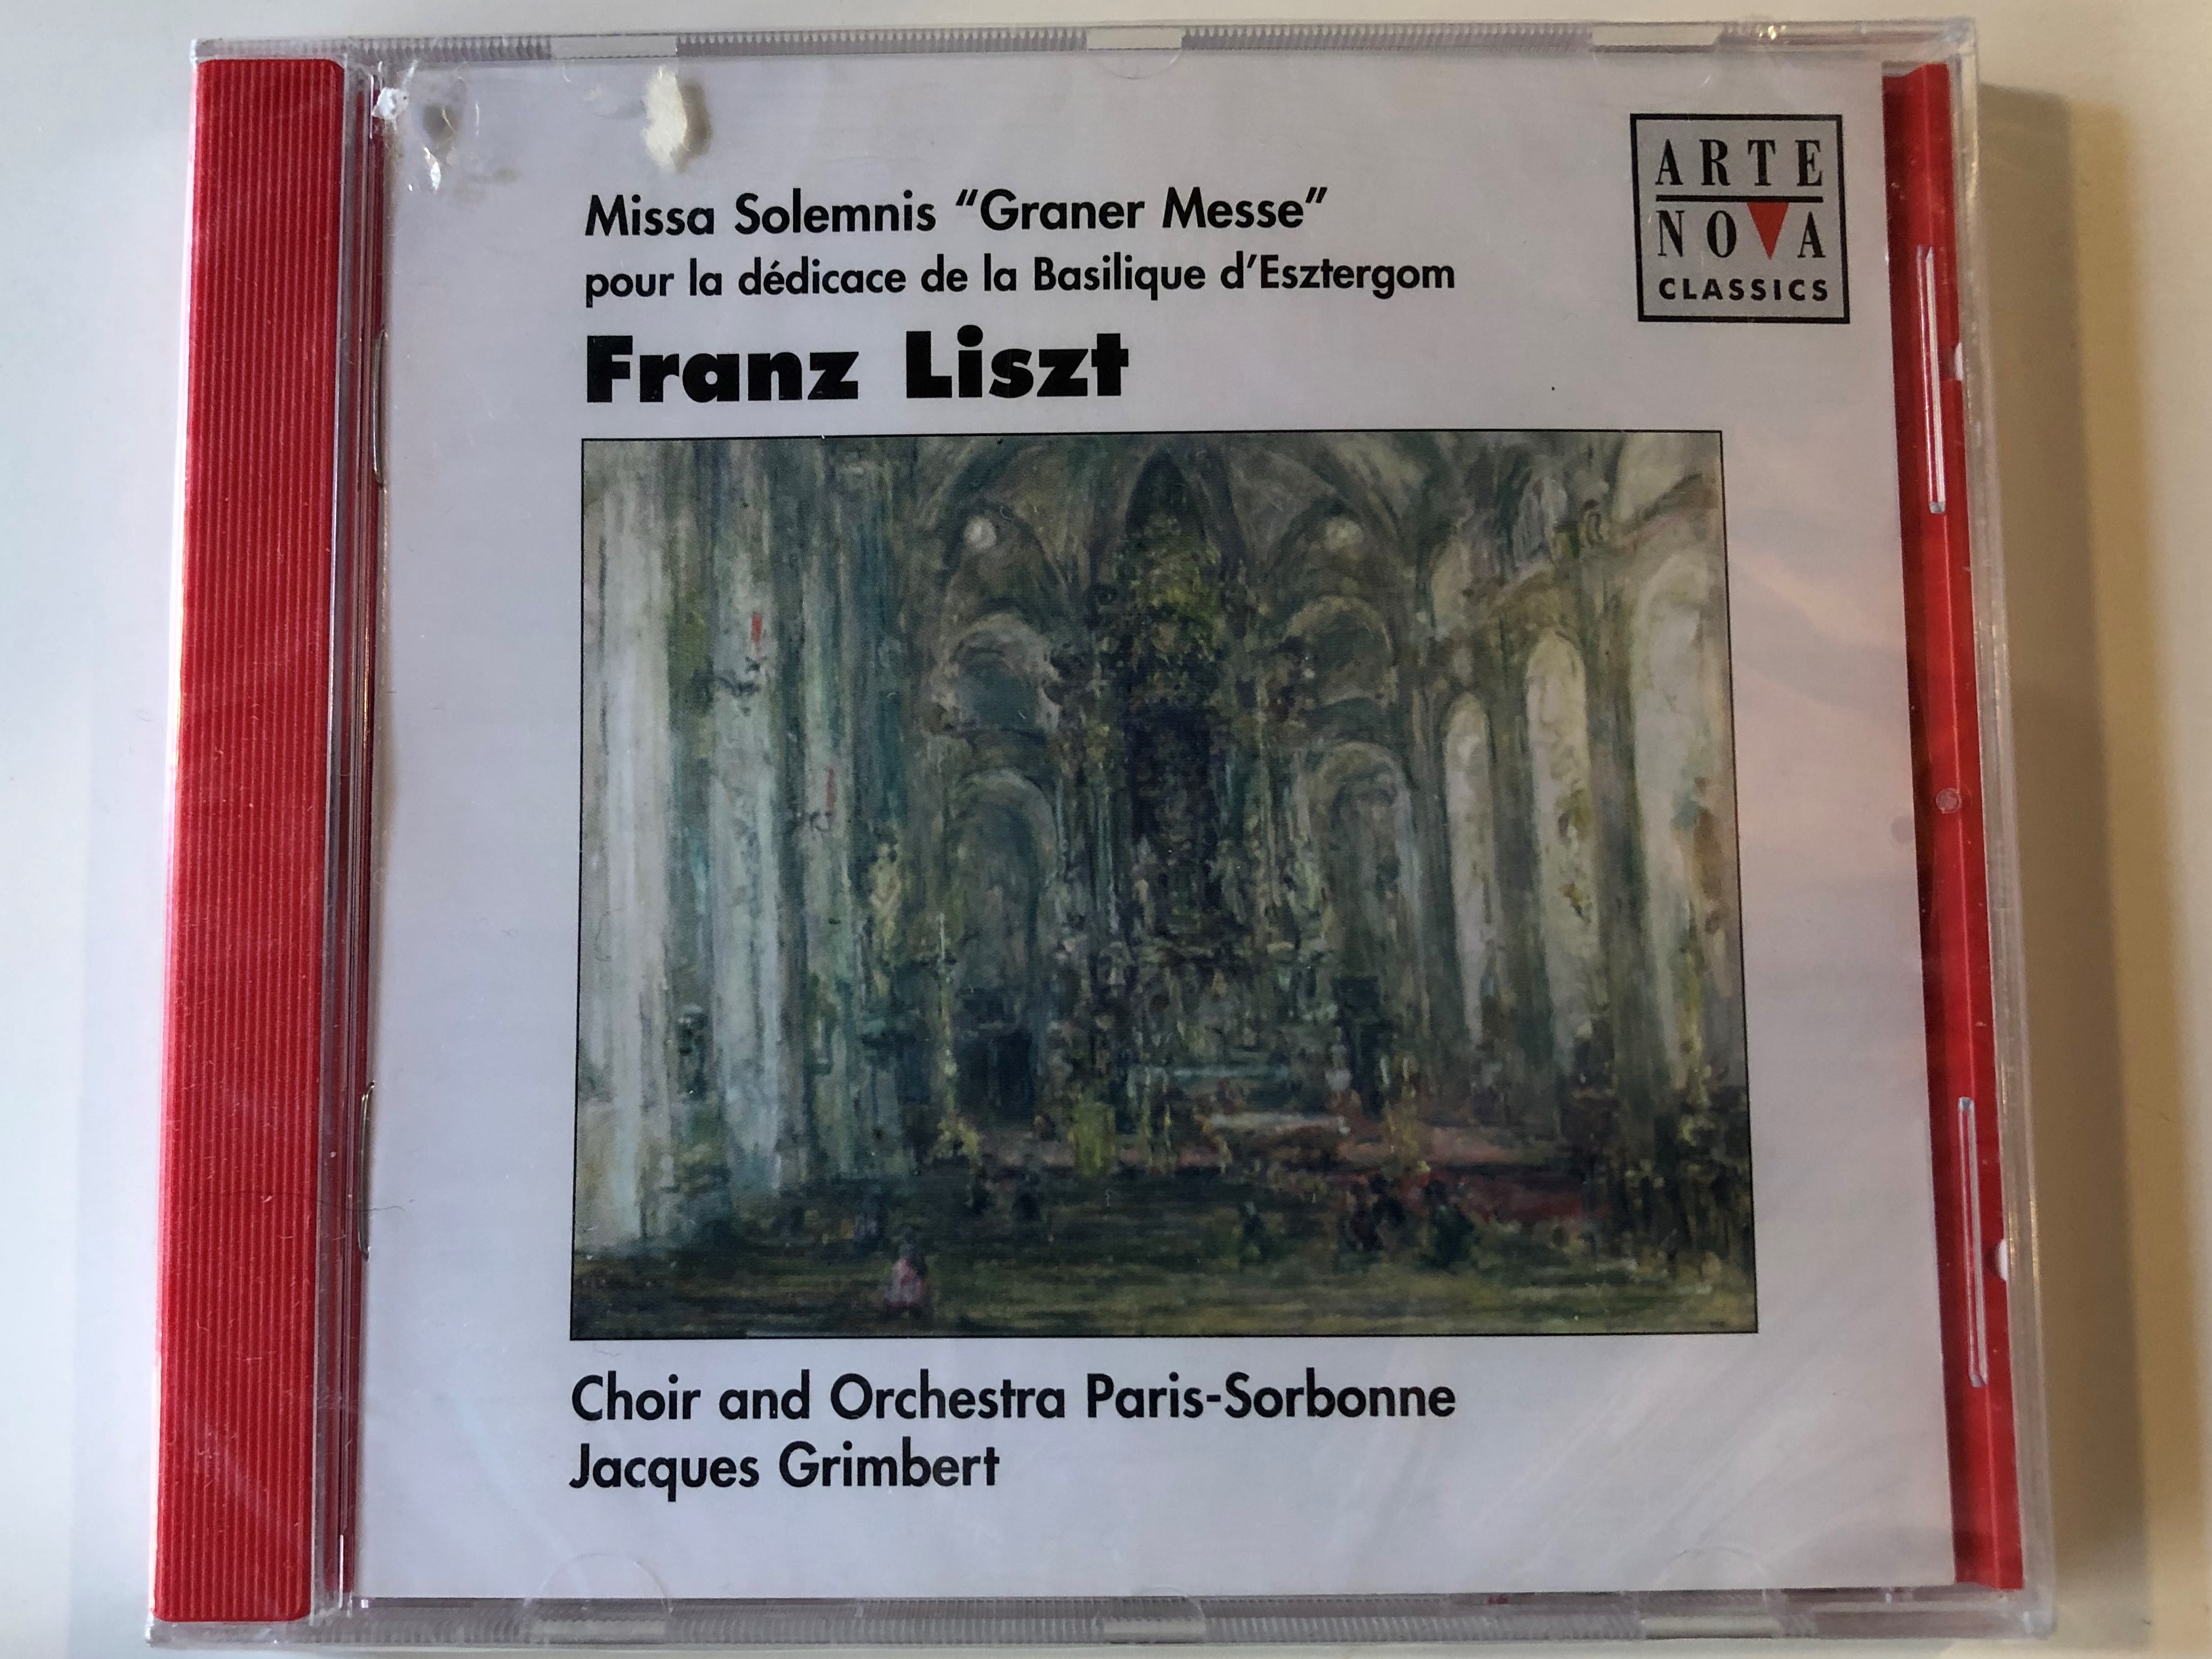 missa-solemnis-graner-messe-pour-la-d-dicace-de-la-basilique-d-esztergom-franz-liszt-choir-and-orchestra-paris-sorbonne-jacques-grimbert-arte-nova-classics-audio-cd-1999-74321-65418-2-1-.jpg